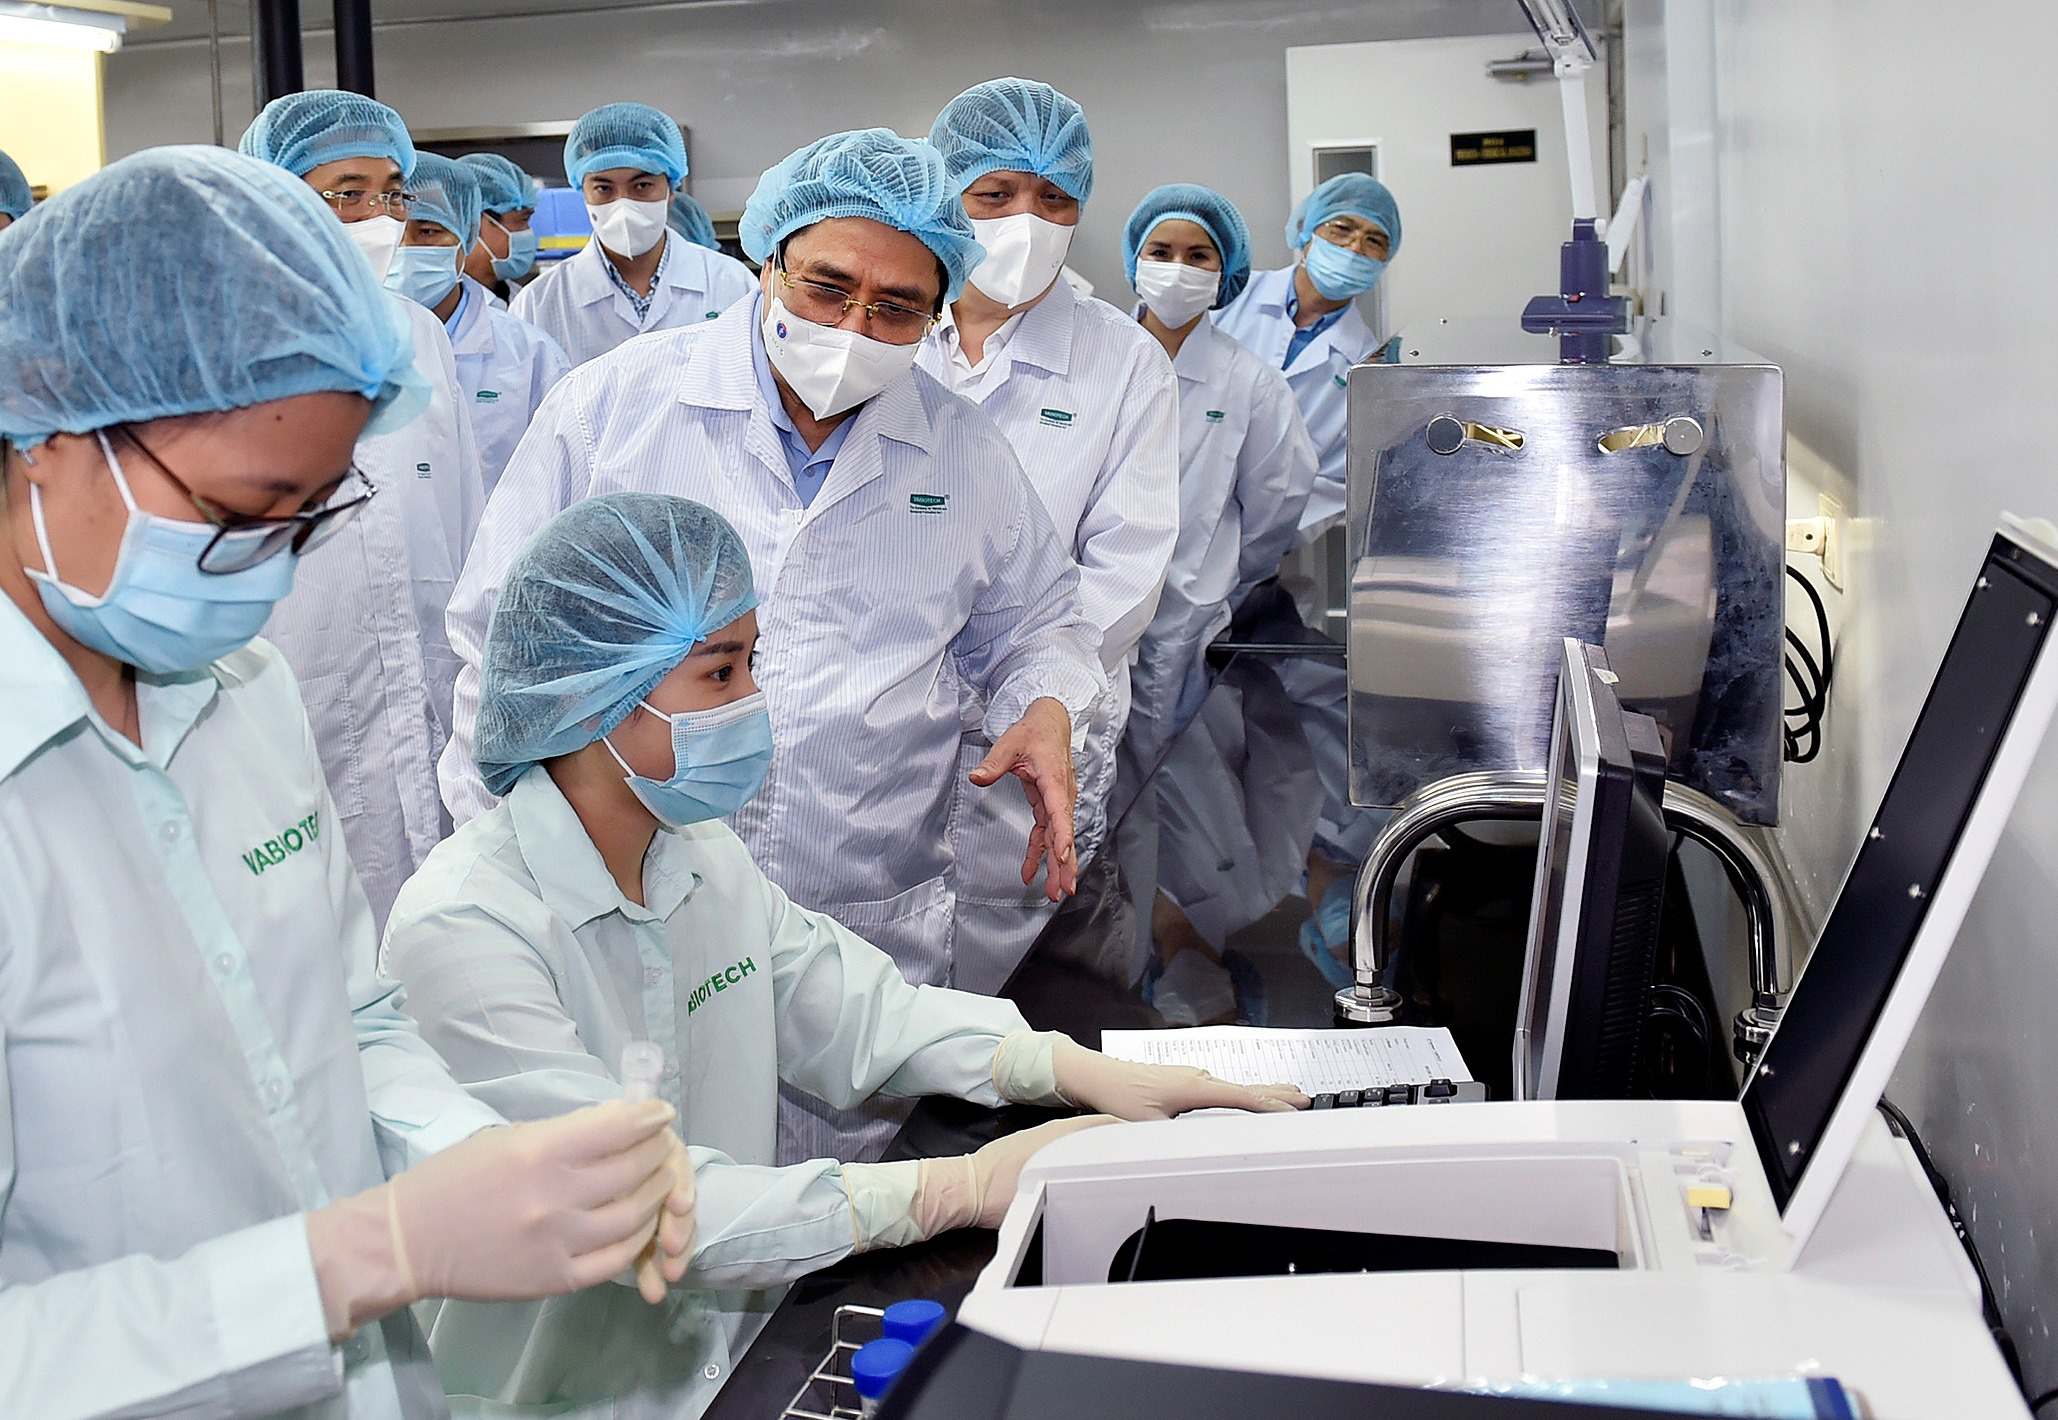 Ủy viên Bộ Chính trị, Thủ tướng Chính phủ Phạm Minh Chính thăm hỏi, động viên các nhà khoa học đang làm việc tại Viện Vệ sinh dịch tễ Trung ương và Công ty VABIOTECH - các đơn vị nghiên cứu, sản xuất vaccine, sinh phẩm, vật tư y tế phòng, chống dịch bệnh COVID-19 _Ảnh: Tư liệu